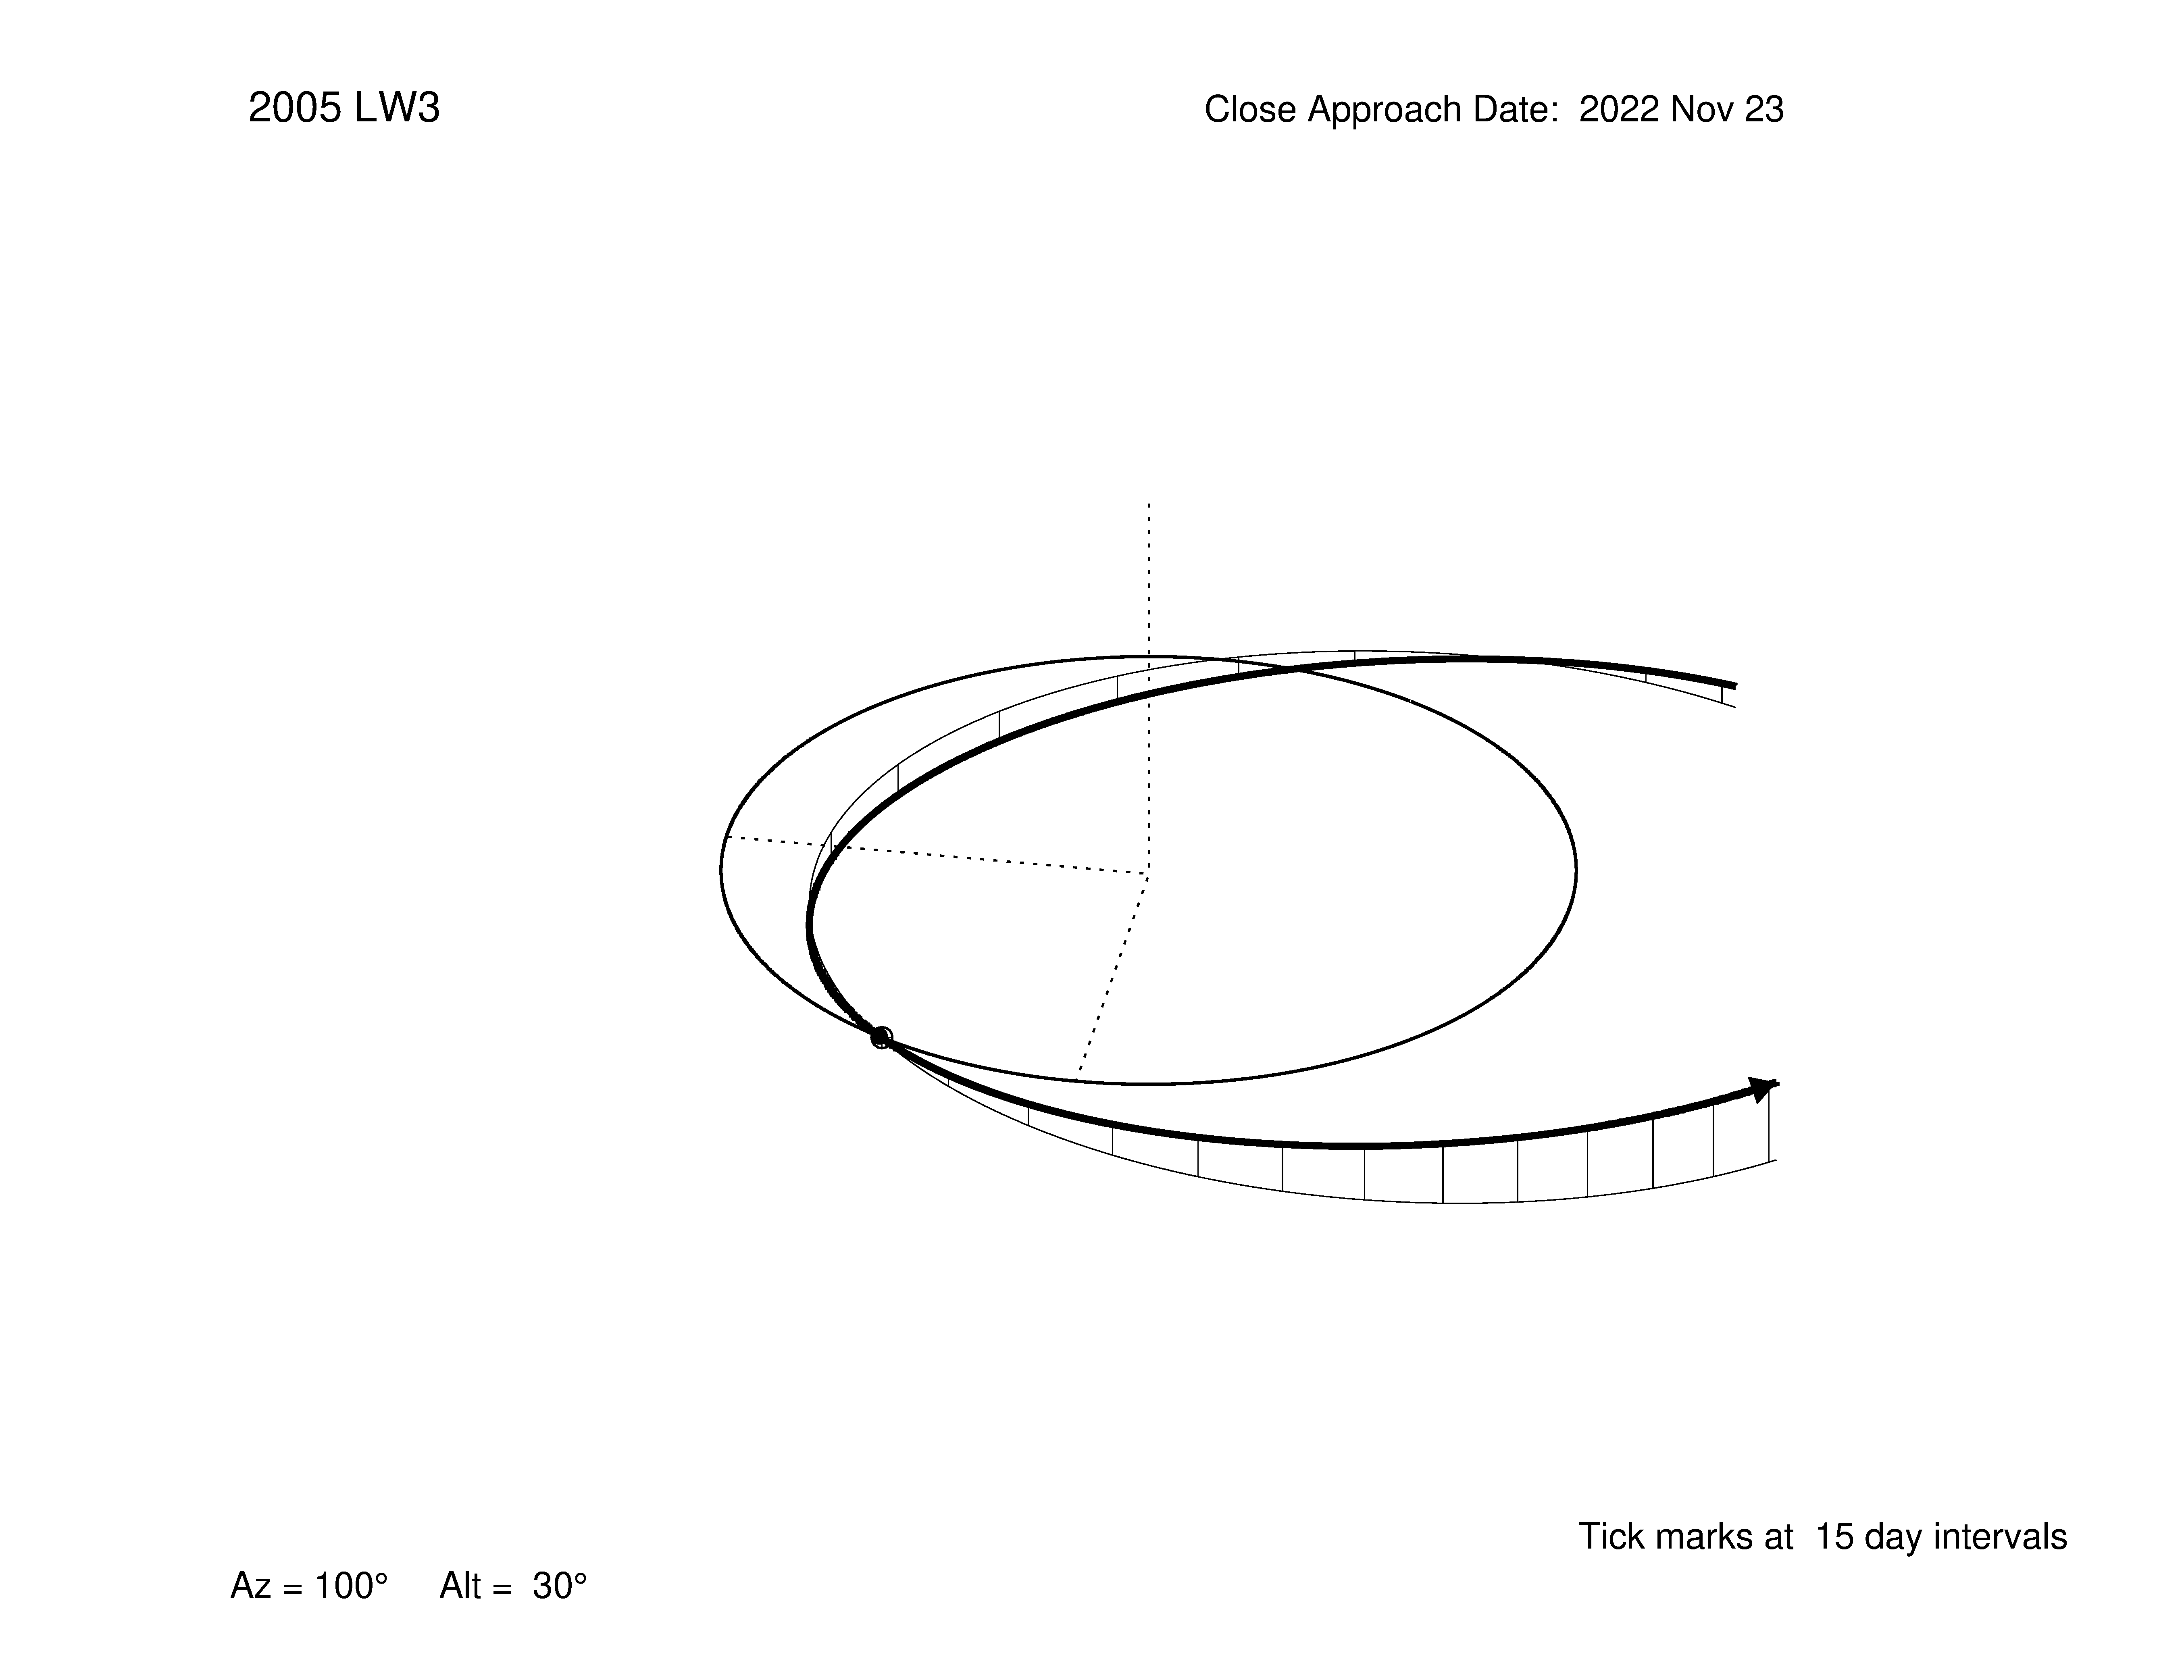 Oblique view of 2005 LW3' orbit.